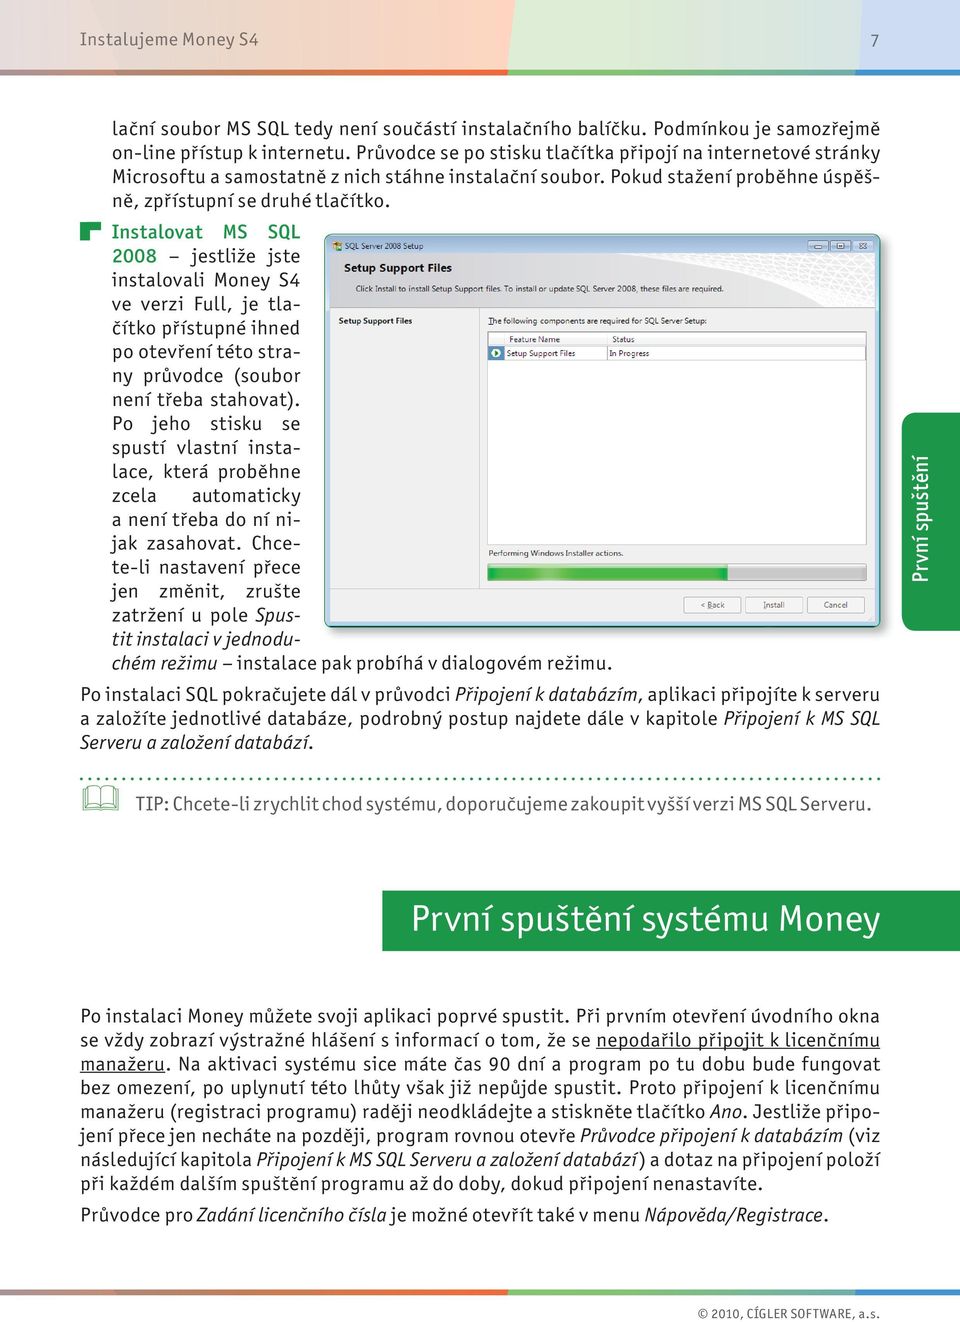 Instalovat MS SQL 2008 jestliže jste instalovali Money S4 ve verzi Full, je tlačítko přístupné ihned po otevření této strany průvodce (soubor není třeba stahovat).